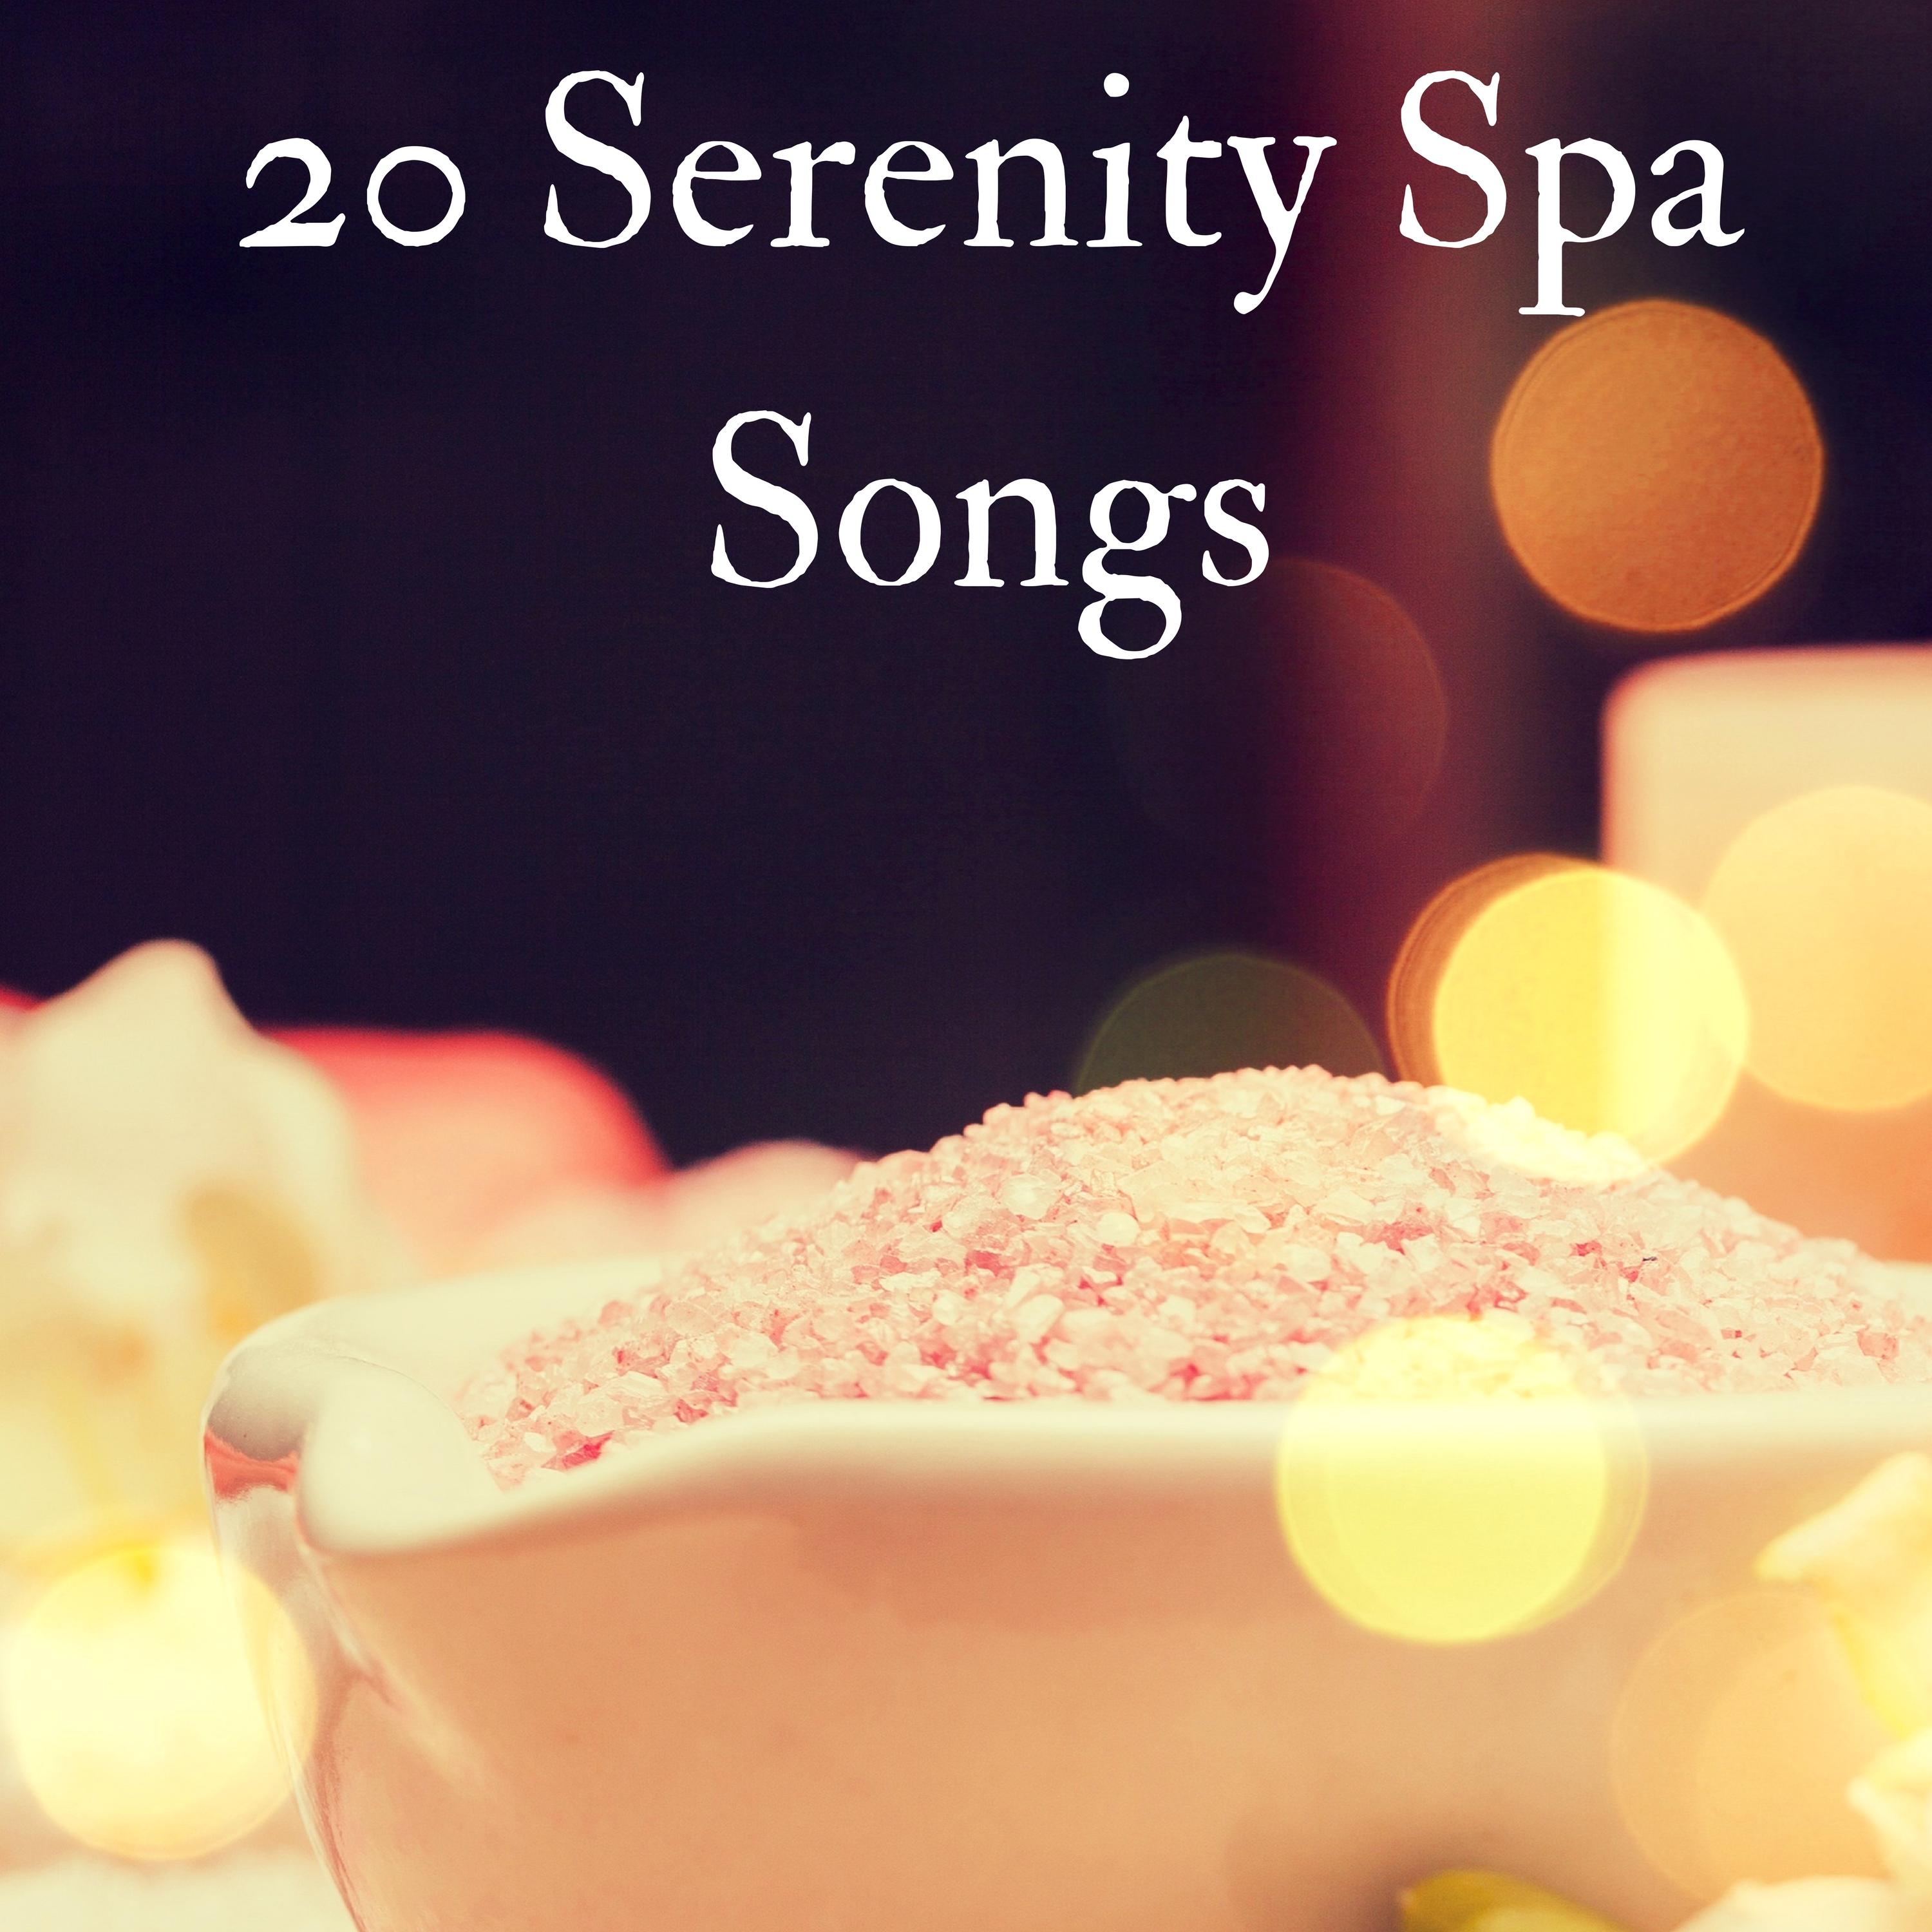 20 Serenity Spa Songs